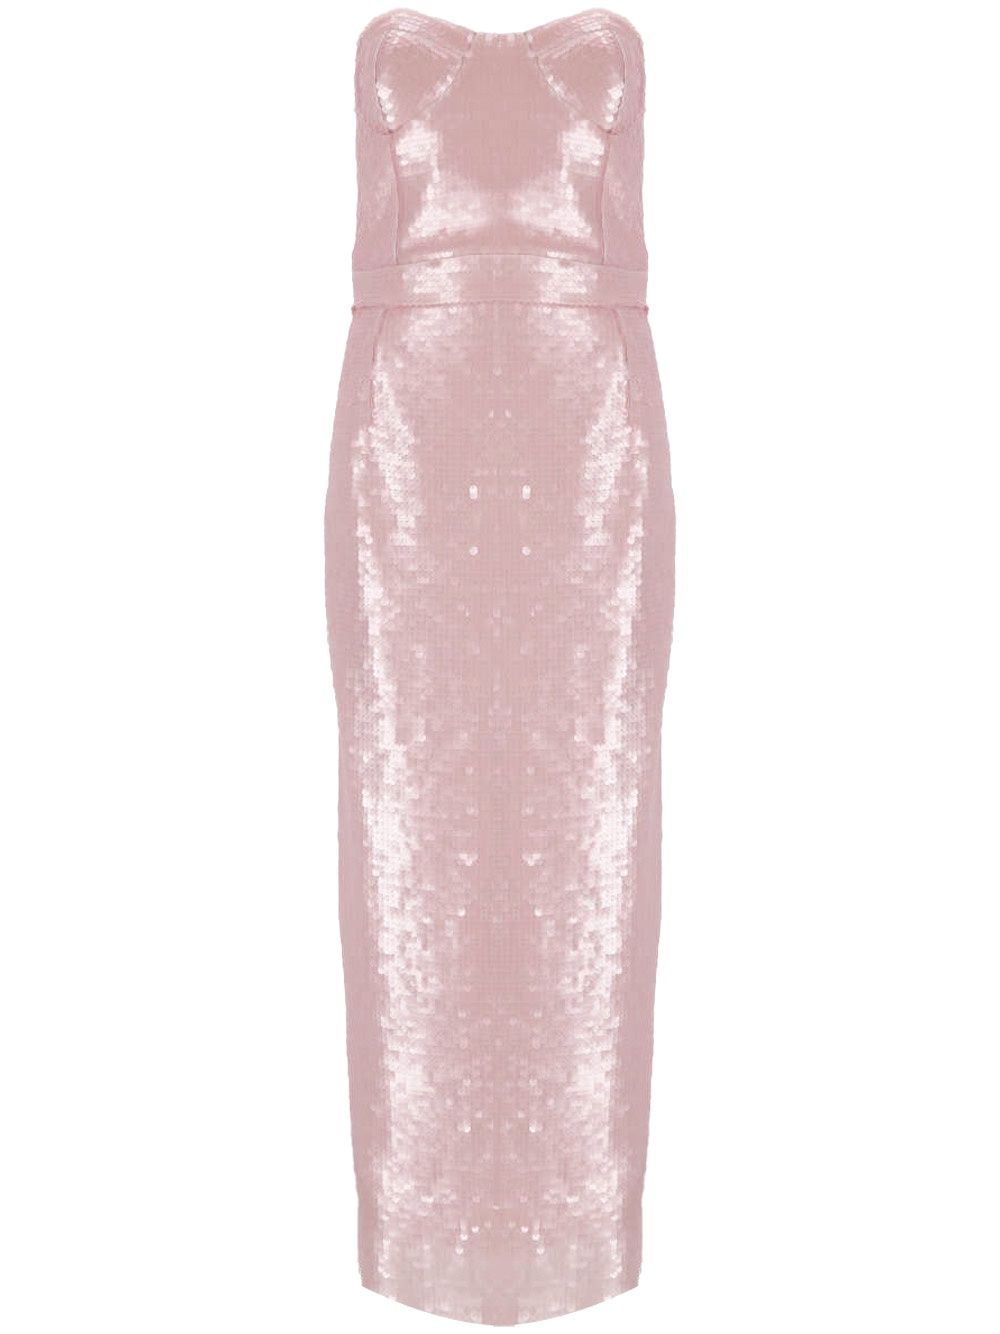 Strapless light pink sequin dress